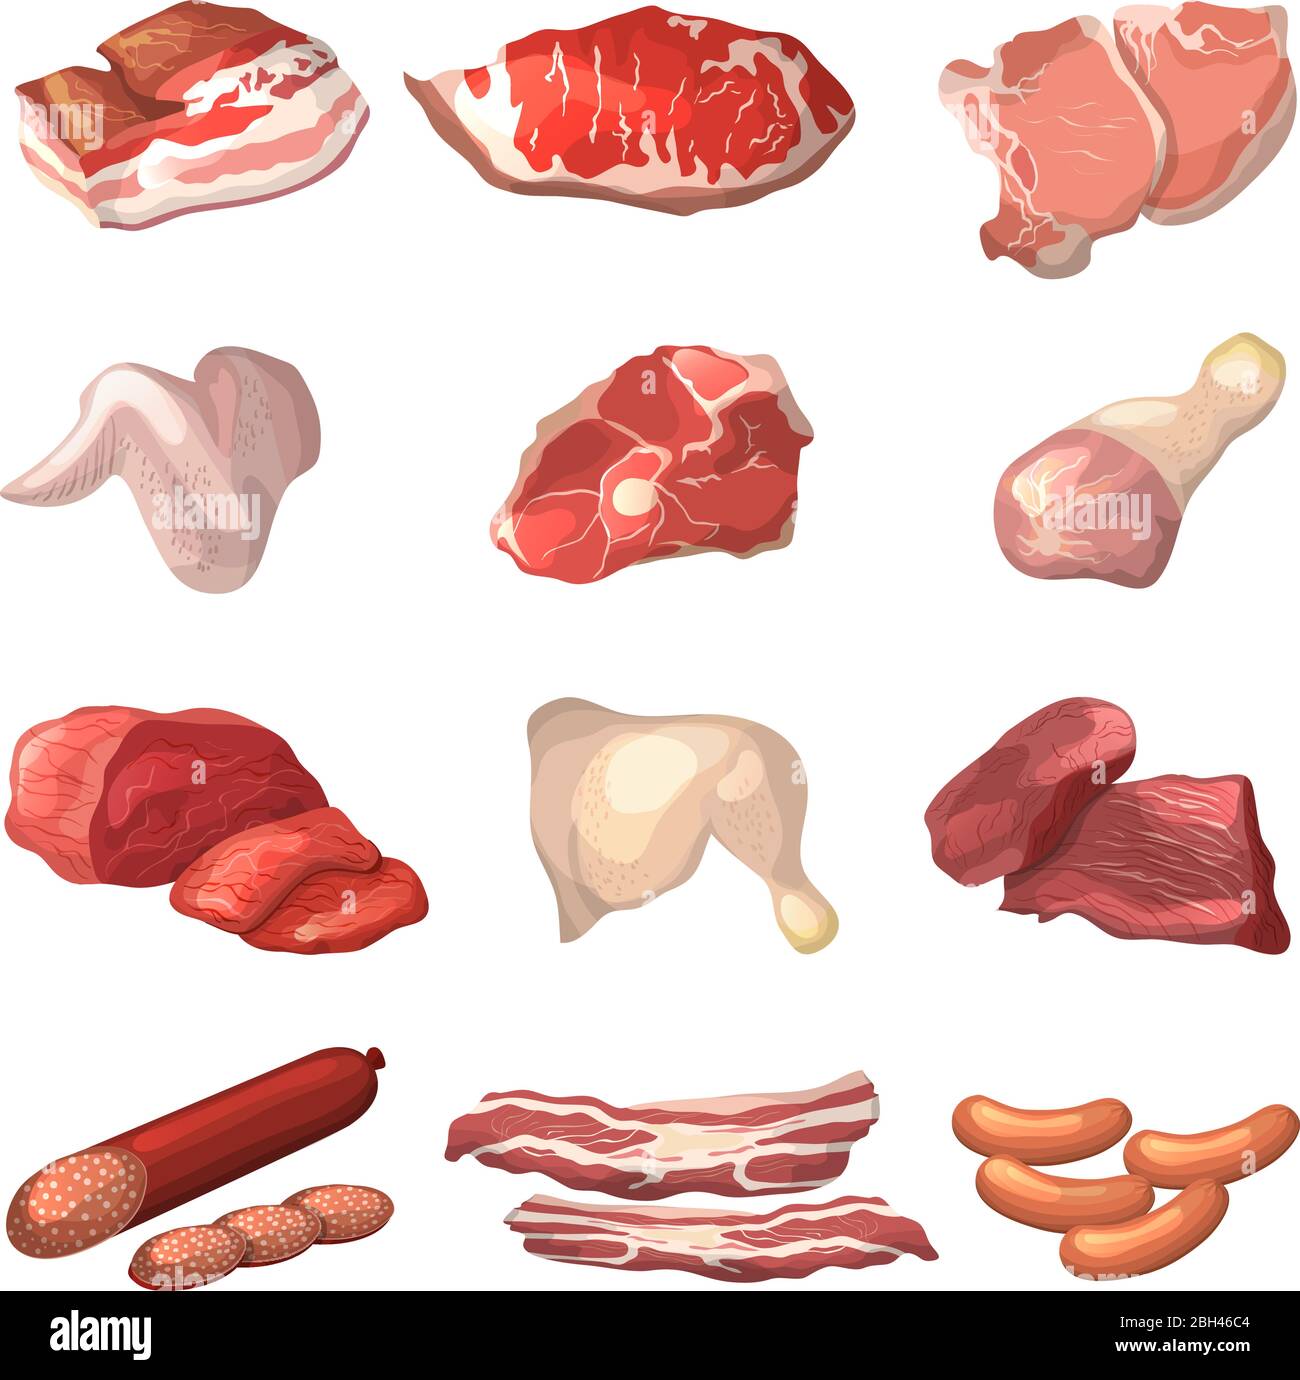 Diferentes ilustraciones de carne. Carne de res de mármol, cordero y otros  cuadros de comida en estilo de dibujos animados. Carne de cerdo, jamón  crudo y productos de carne fresca vect Imagen